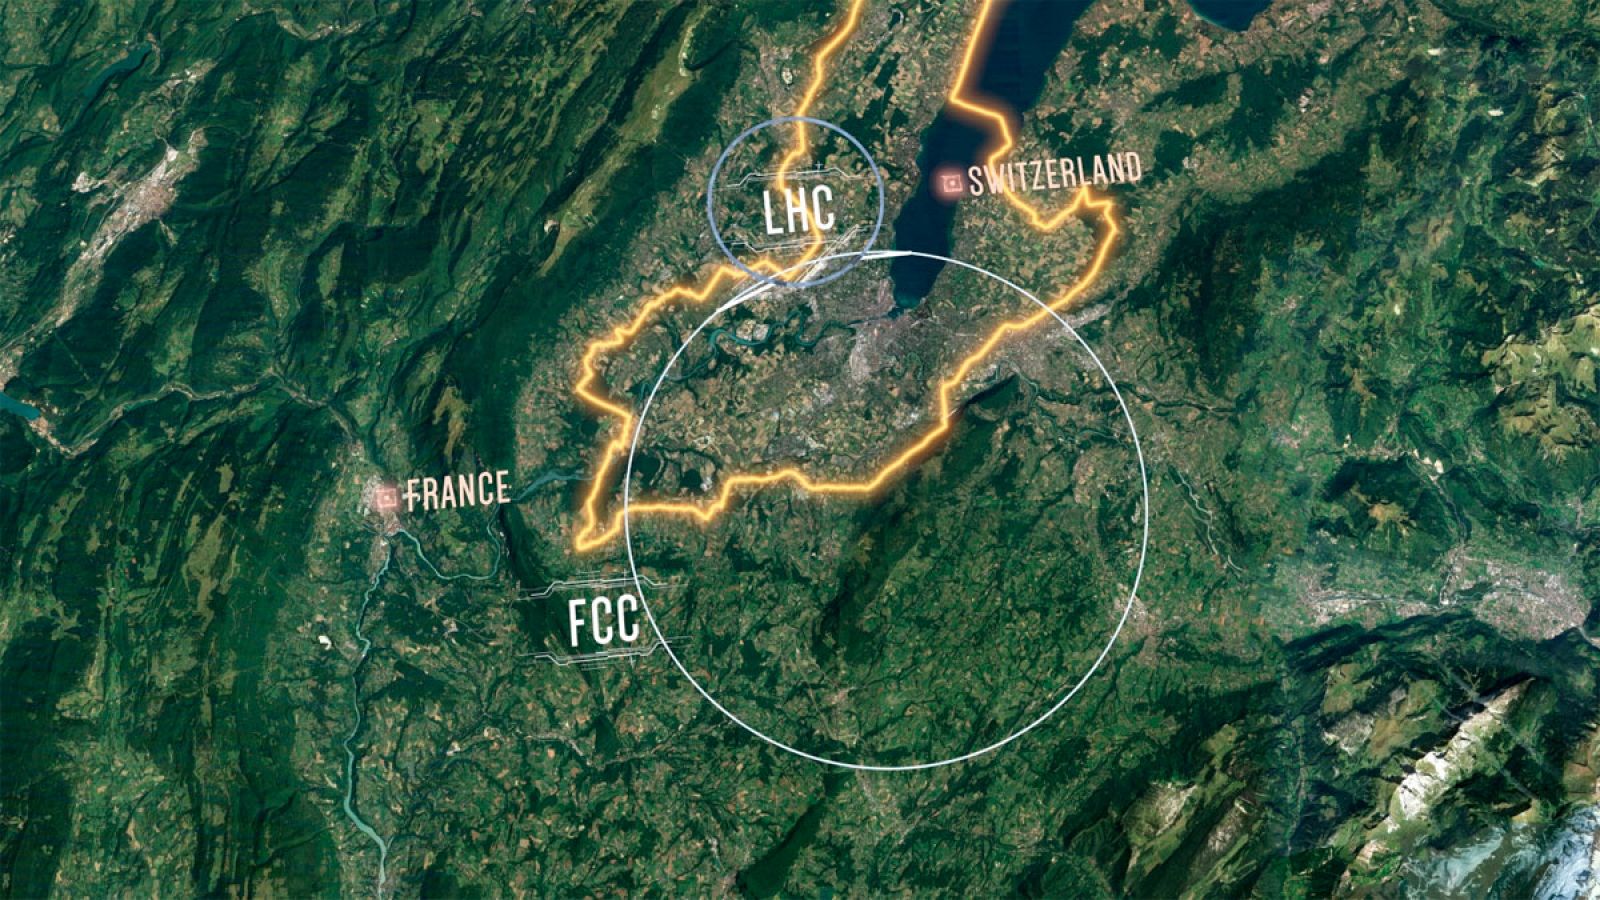 El objetivo del Futuro Colisionador Circular (FCC) es proporcionar un anillo de 100 kilómetros bajo la frontera franco-suiza (amarilla en la imagen) para un acelerador superconductor de protones, mucho más grande que el actual LHC.